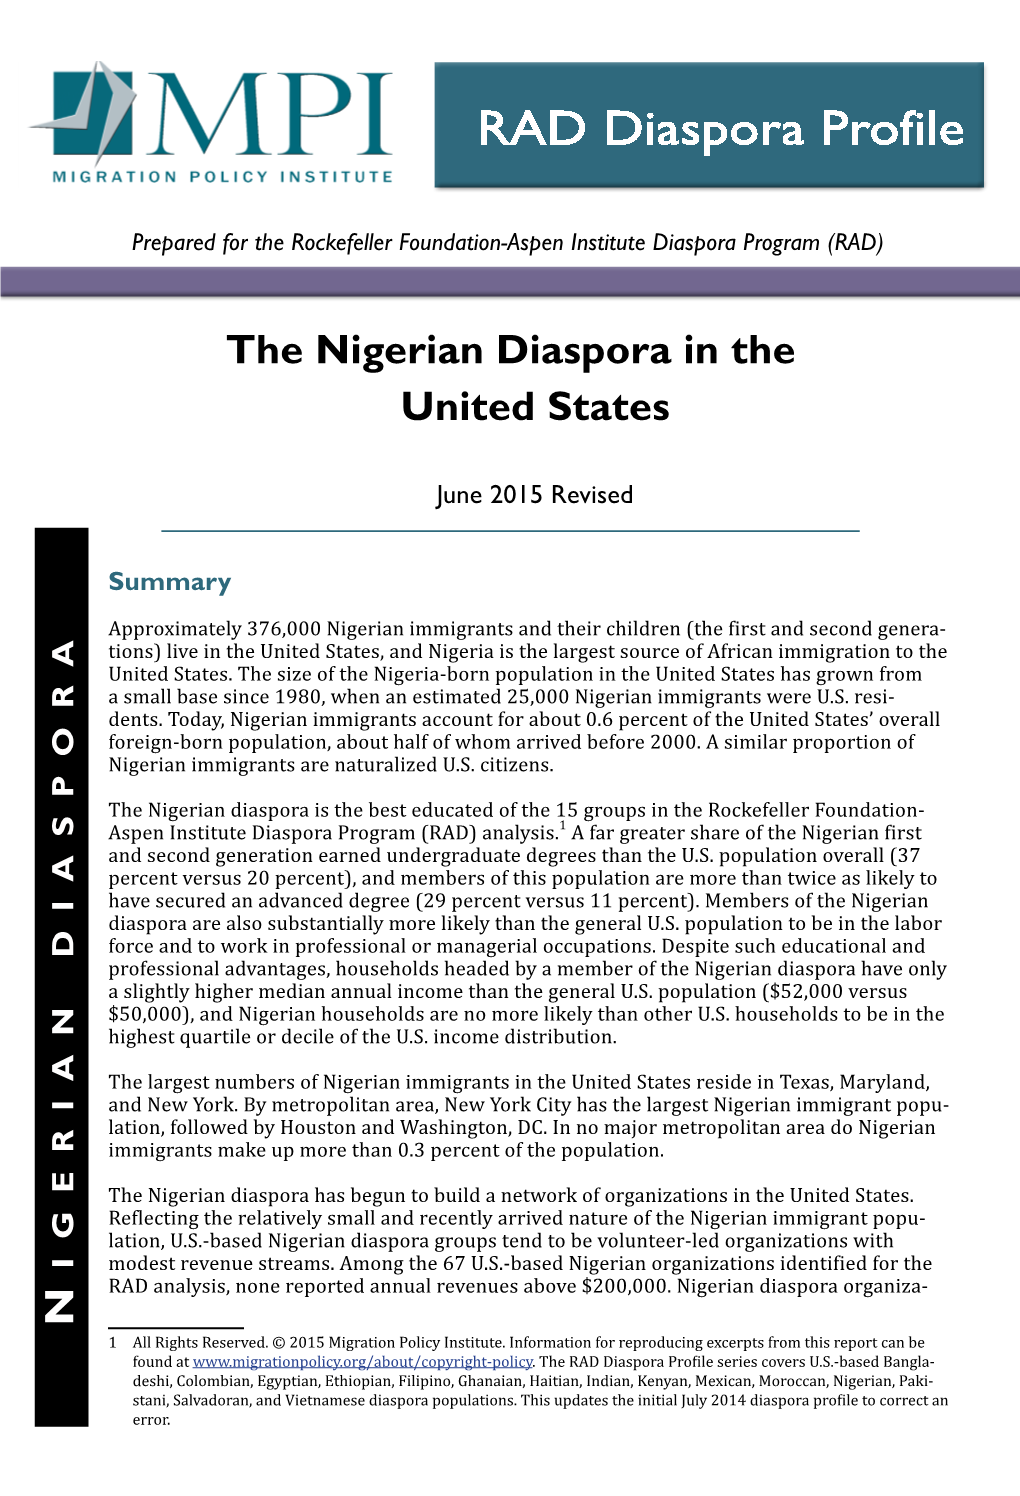 The Nigerian Diaspora in the United States